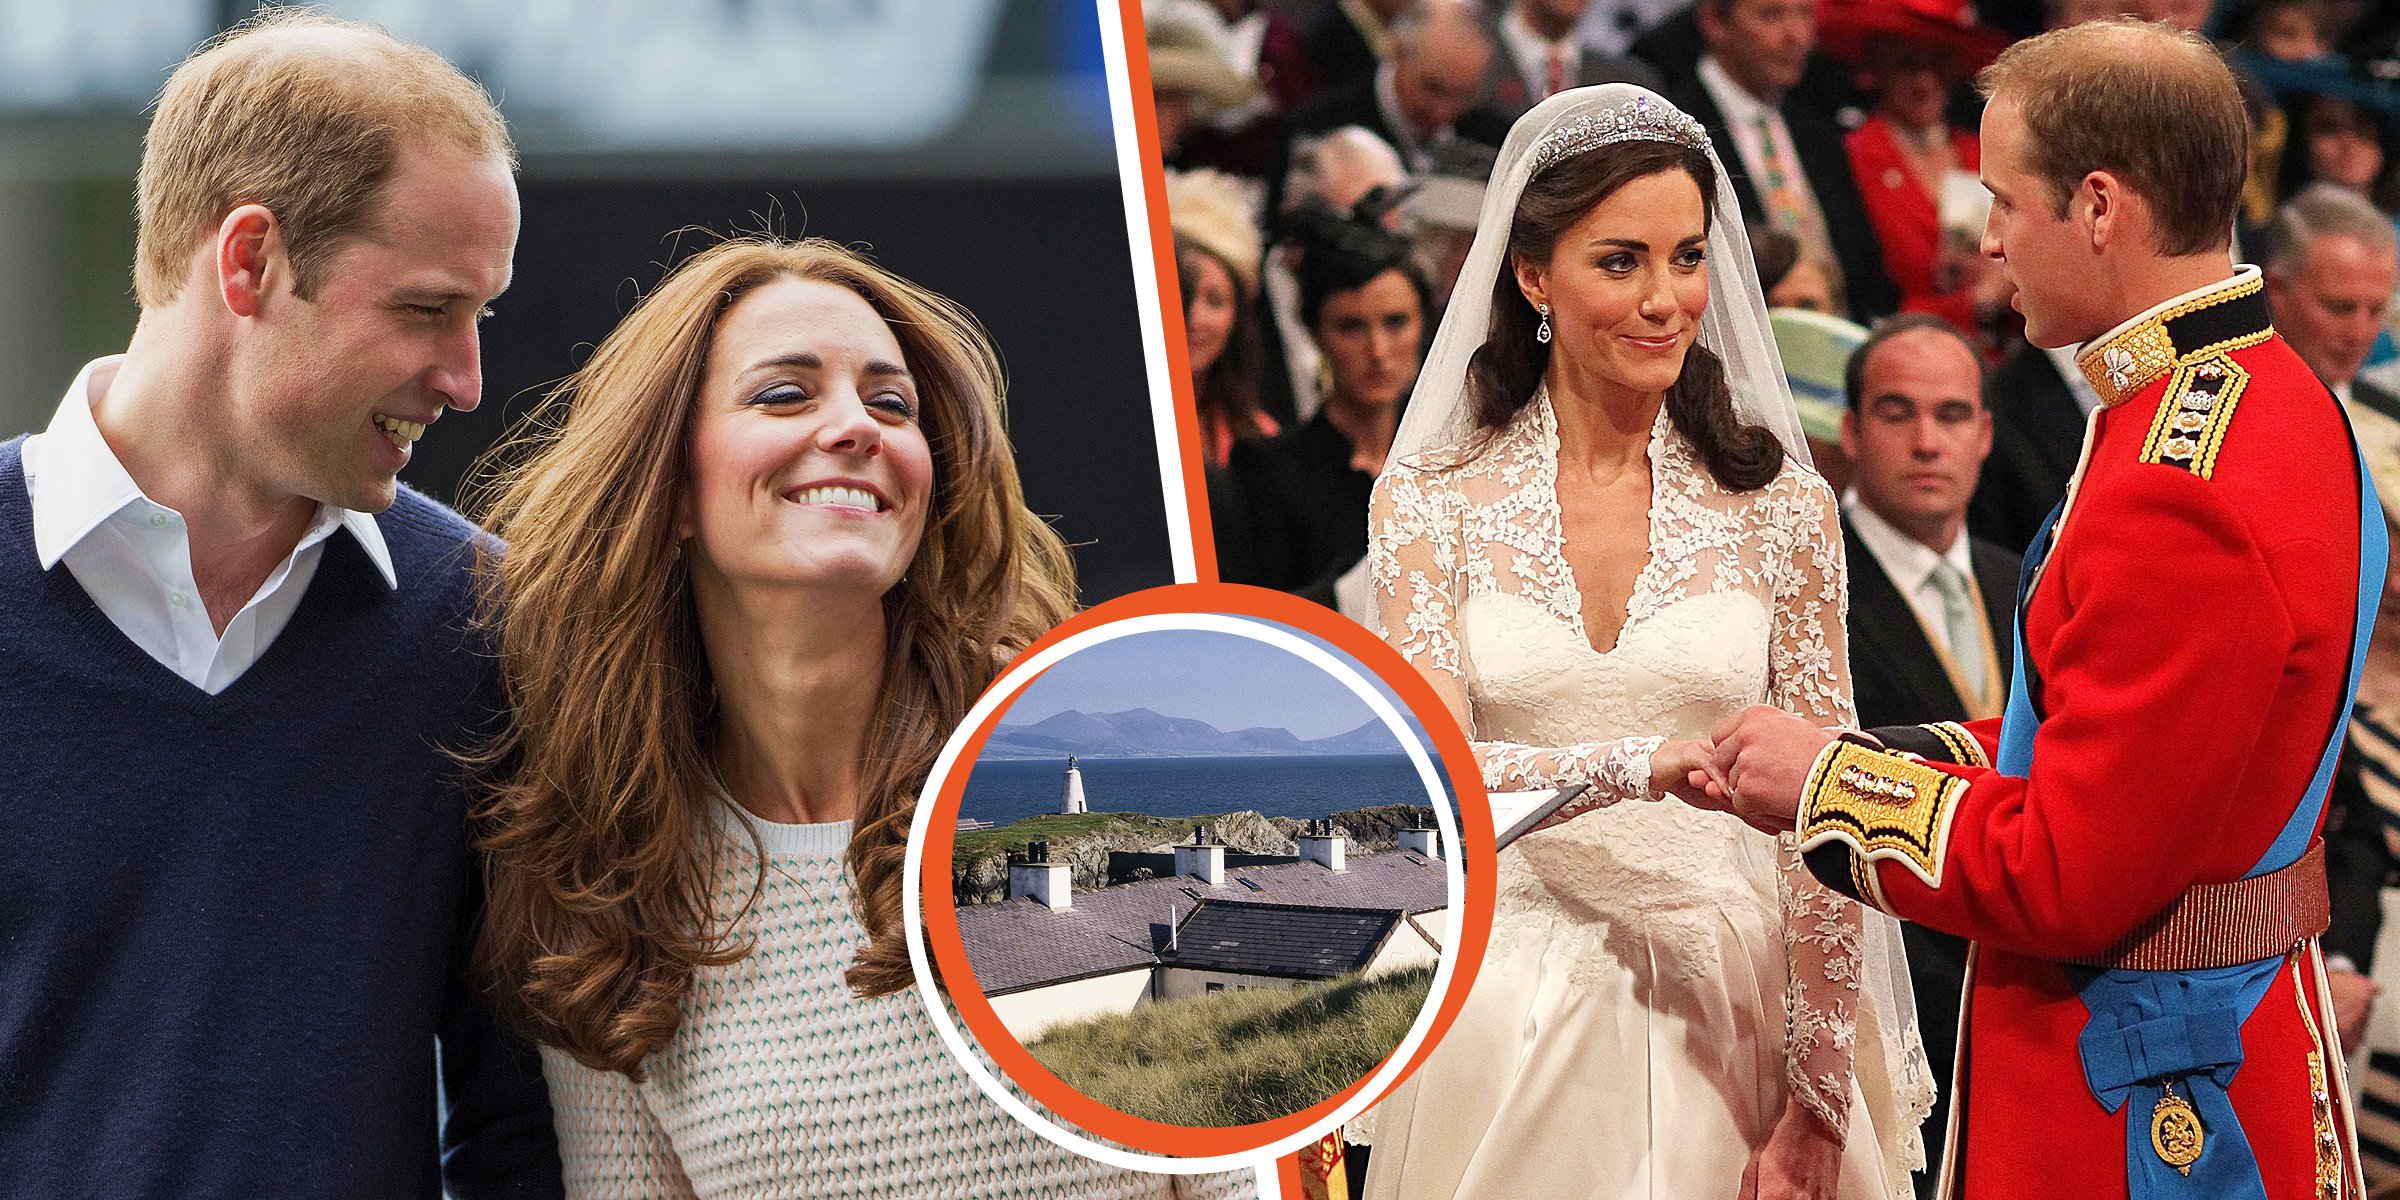 Le Prince William et Catherine, Princesse de Galles | La maison à Anglesey | Le Prince William et Catherine, Princesse de Galles | Source : Getty Images   